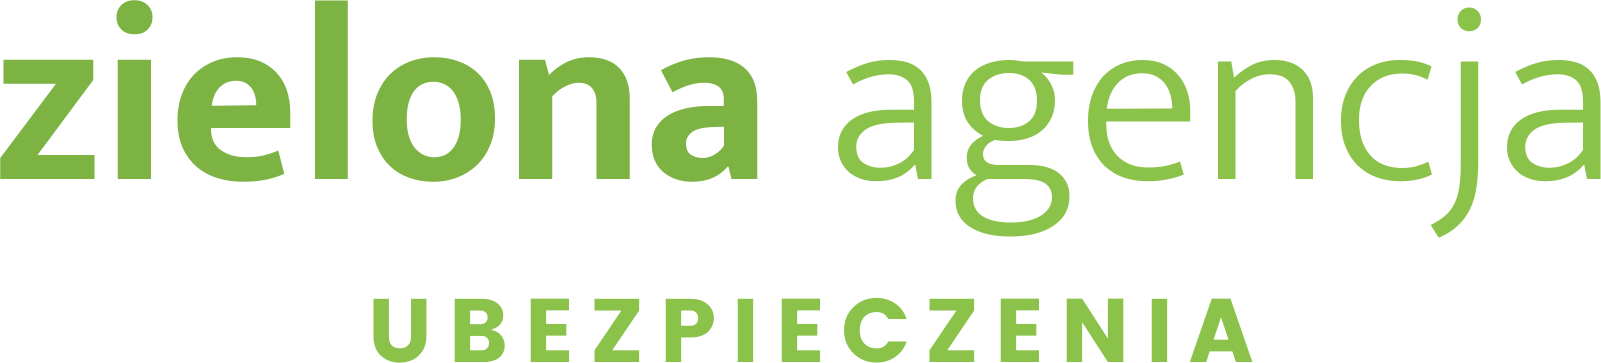 Zielona Angencja logo